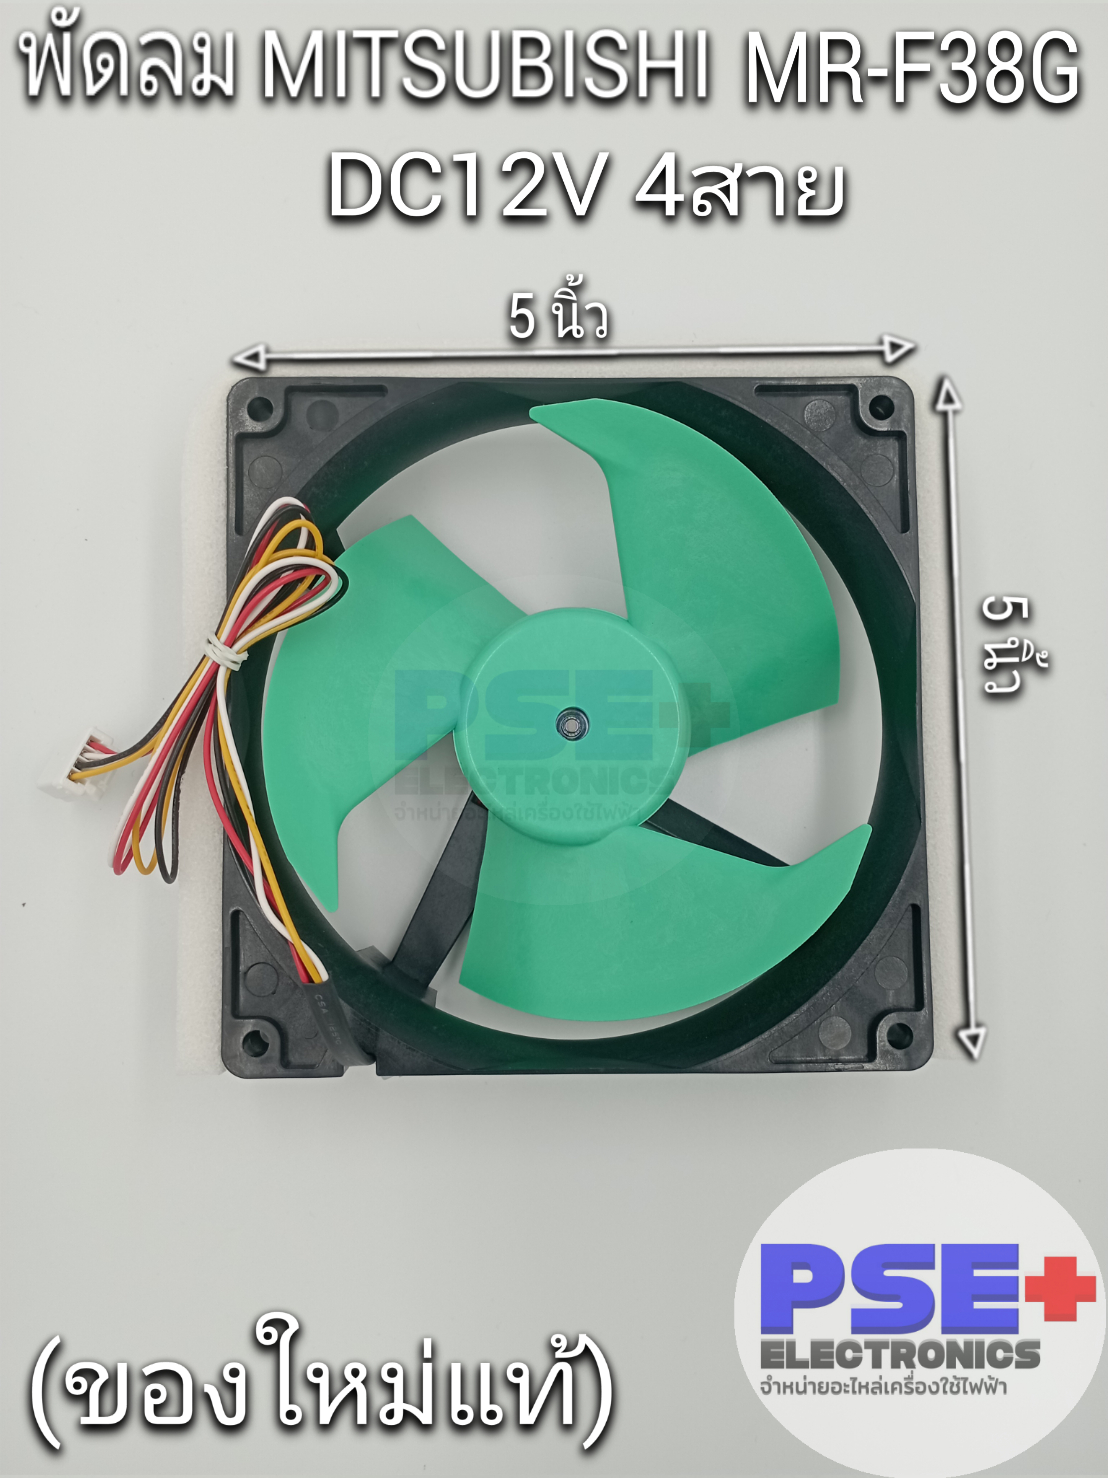 พัดลมตู้เย็น MITSUBISHI รุ่น MR-F38G พาส KIEMQ4320 DC12V 0.35A 4สาย  (ของใหม่แท้) | Lazada.co.th